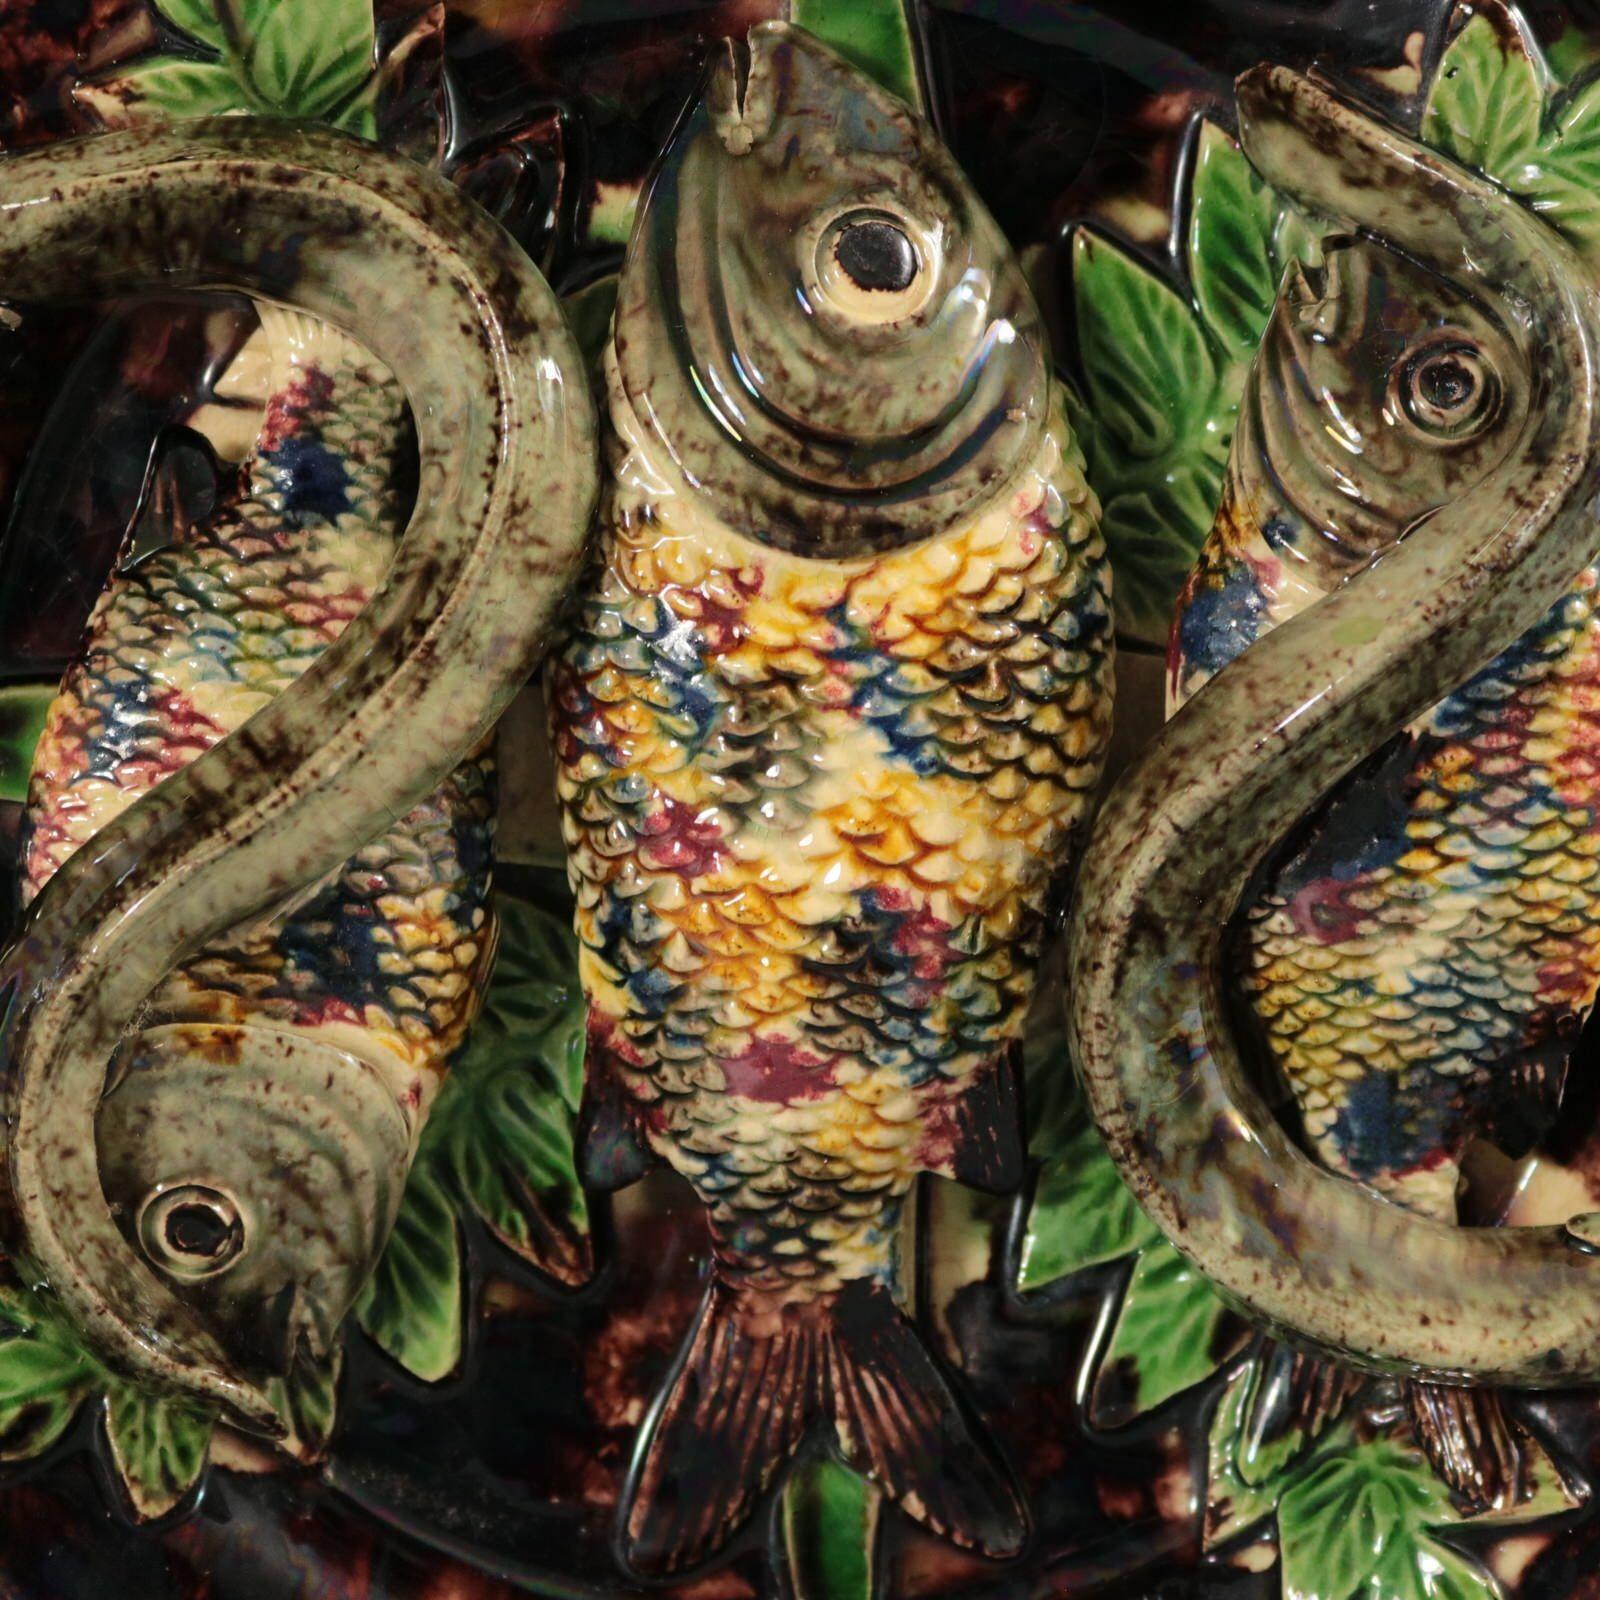 Wandteller aus Majolika von Mafra mit drei Fischen und zwei Aalen, die auf Blättern liegen. Muscheln rund um die Grenze. Färbung: Braun, grün, grau, sind vorherrschend. Das Stück trägt Herstellermarken für die Töpferei von Mafra.